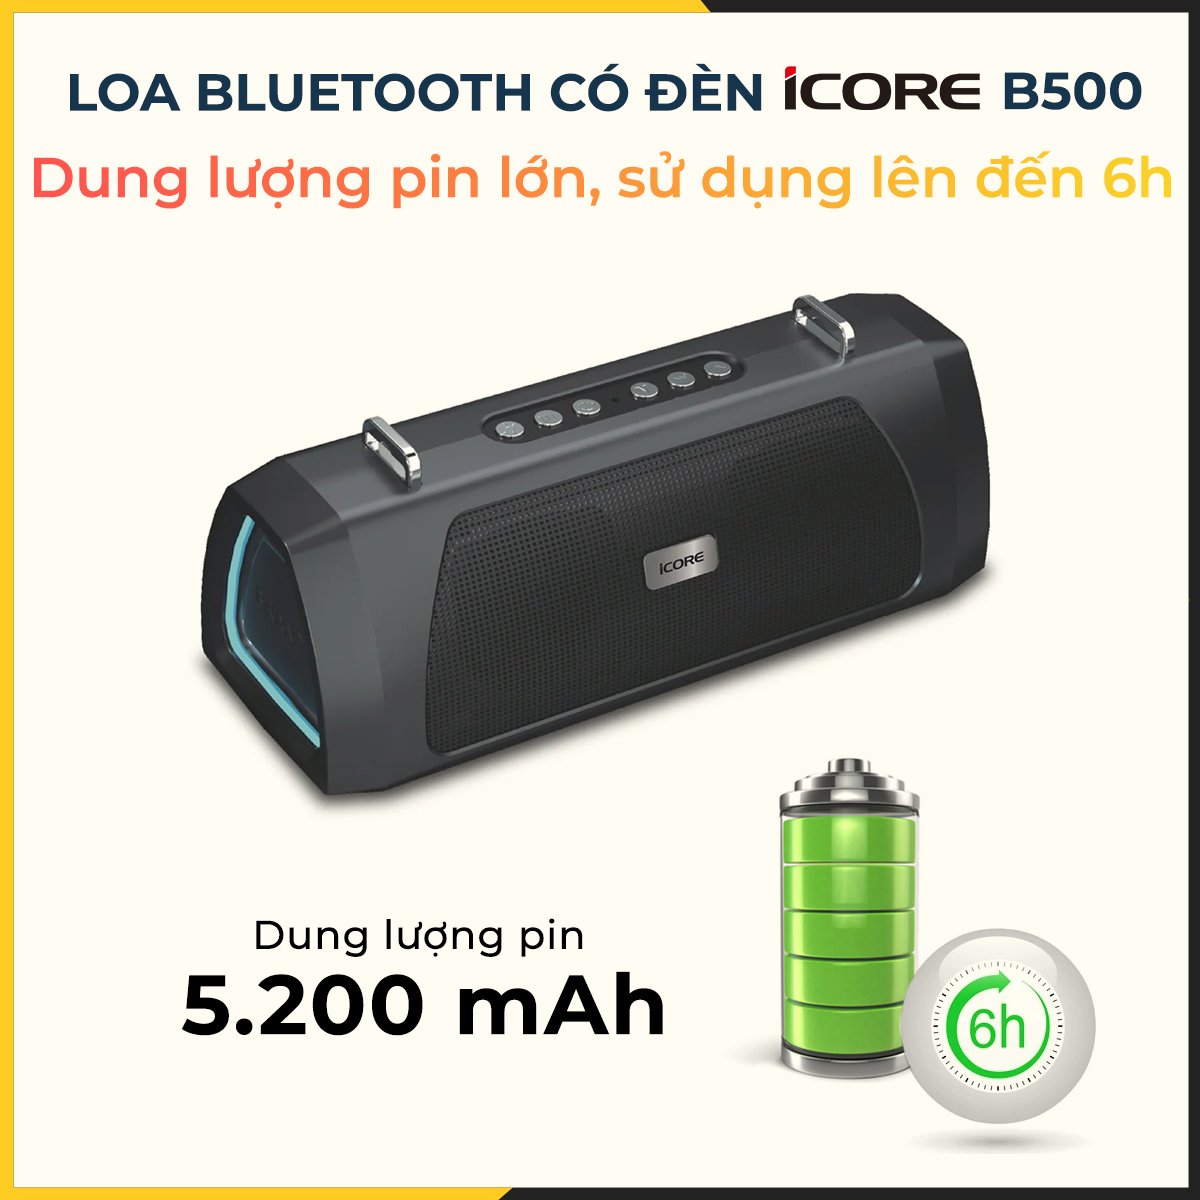 Loa Bluetooth có đèn iCore B500